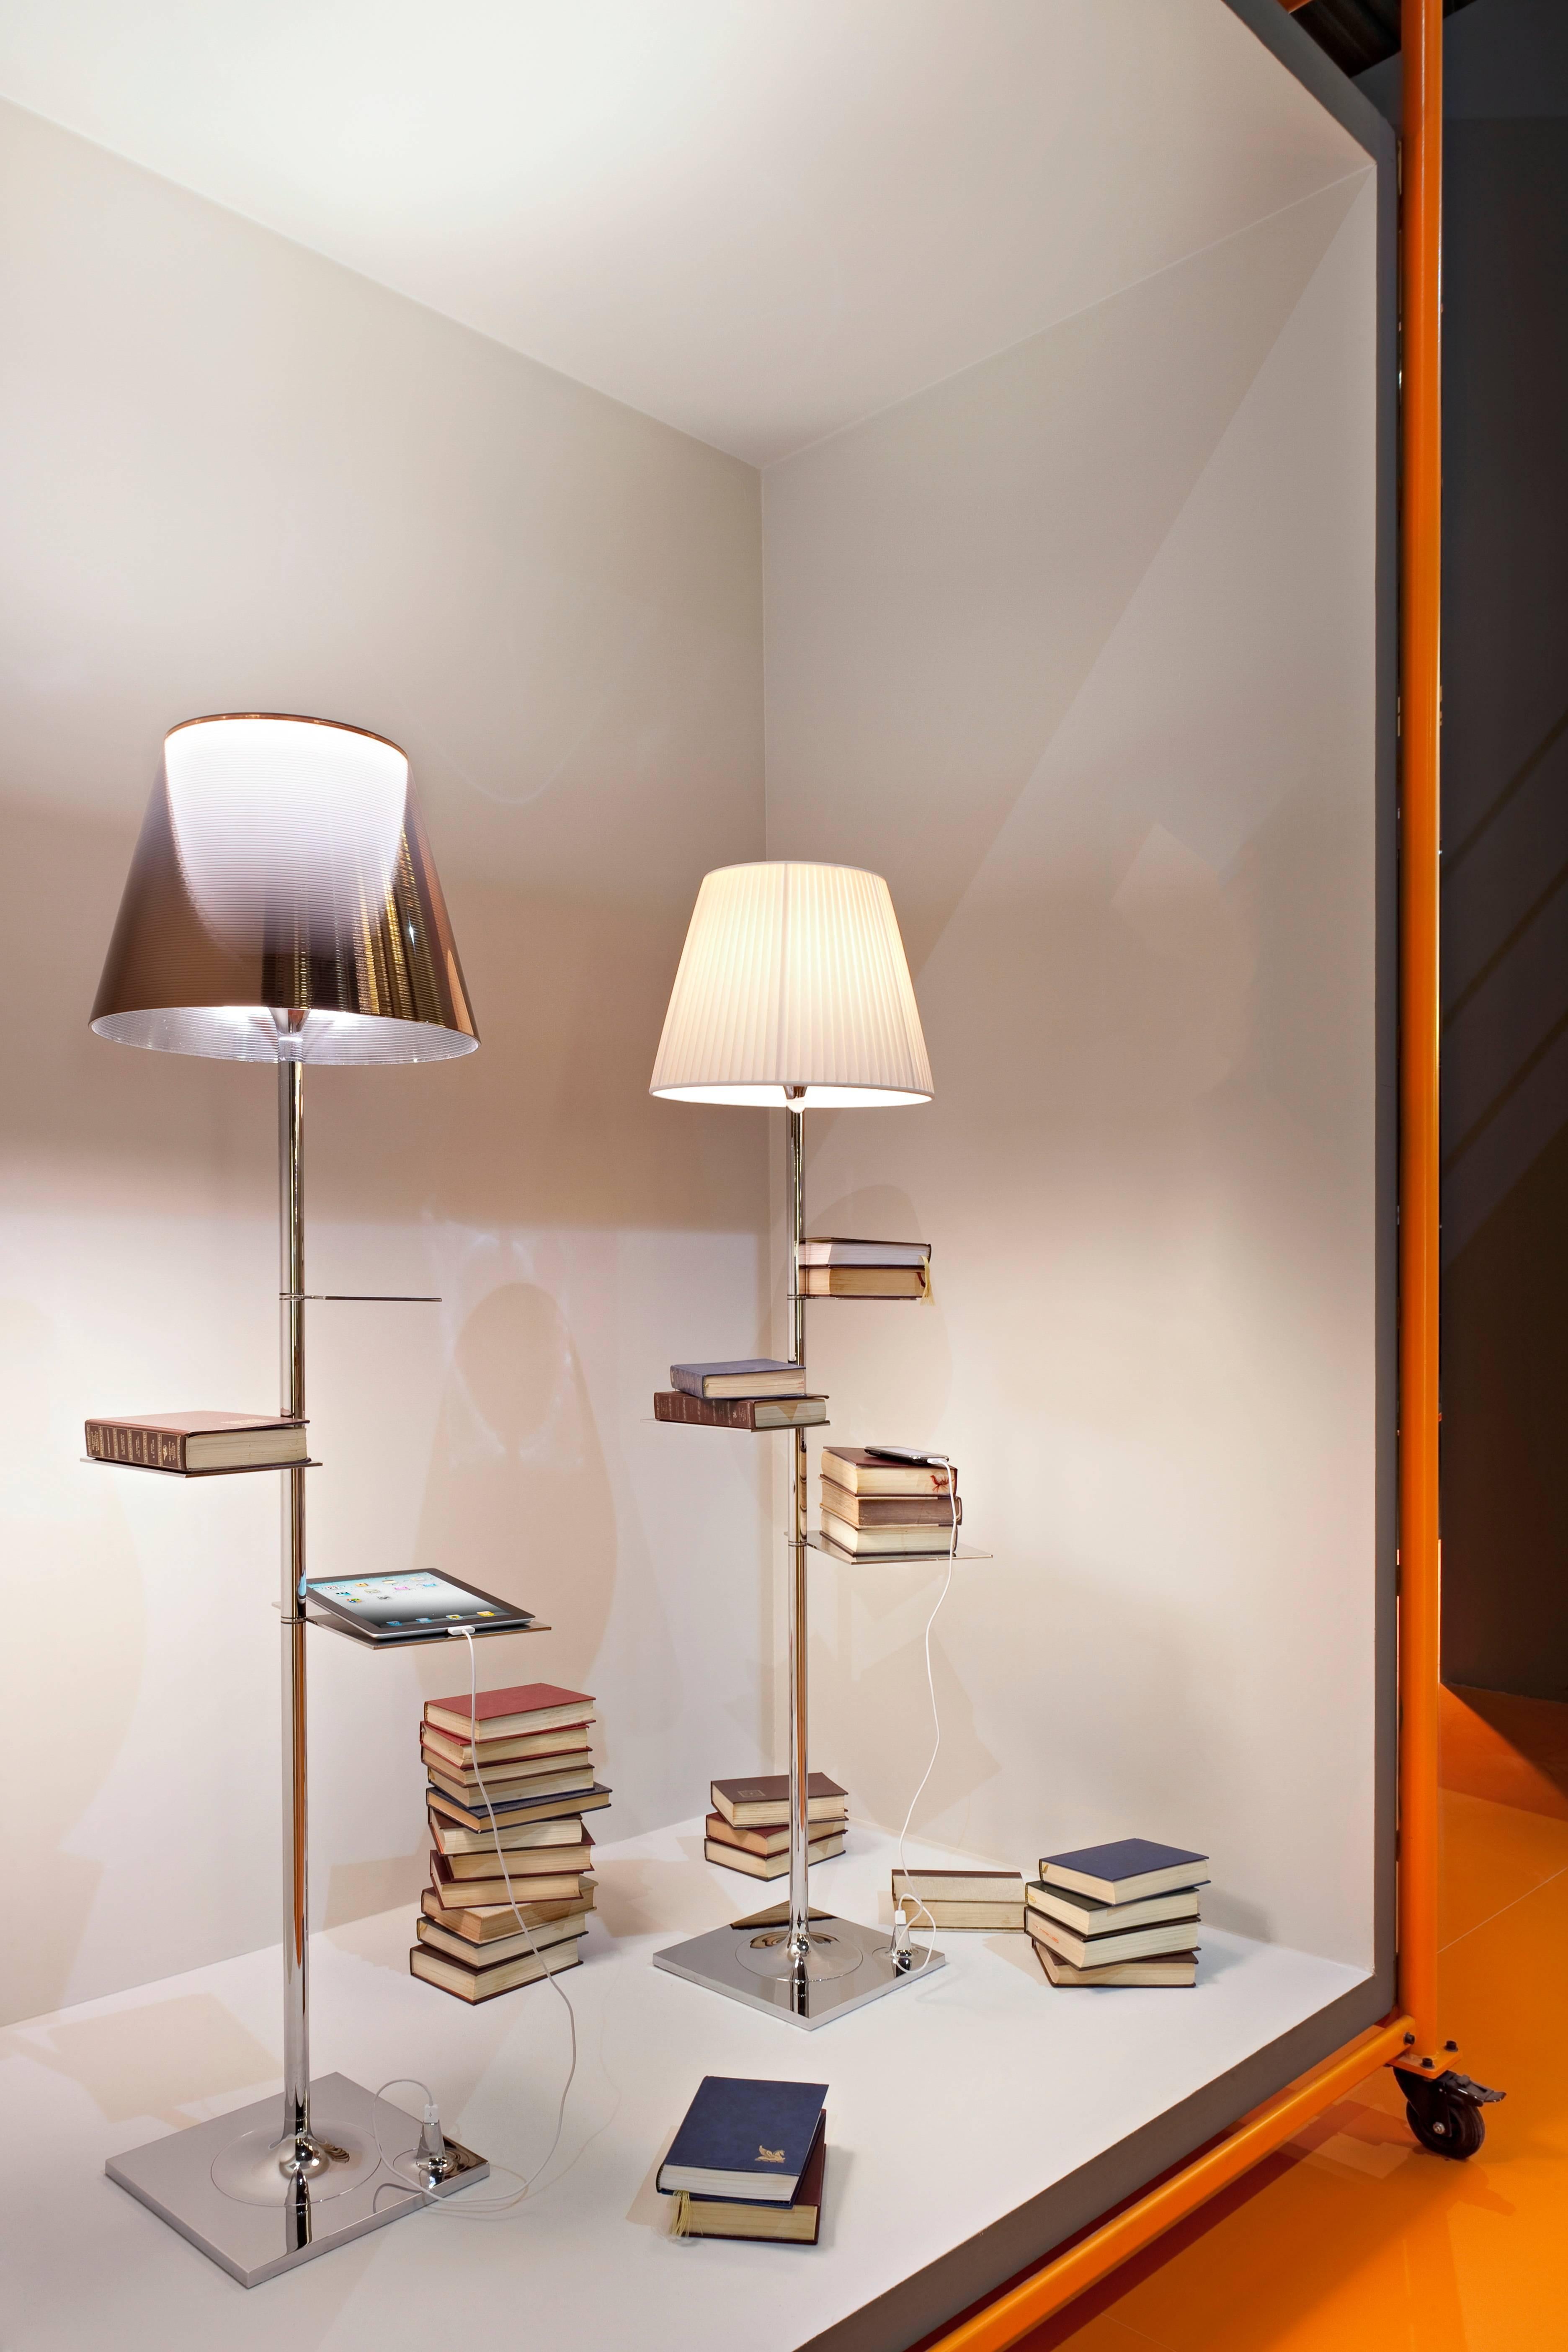 Cette création de Phillippe Starck datant de 2013 est bien plus qu'une simple apparence : Éclairant votre intérieur d'une lumière diffuse, la Biblioteque Nationale sert également d'étagère à livres d'une modernité saisissante et offre un chargeur